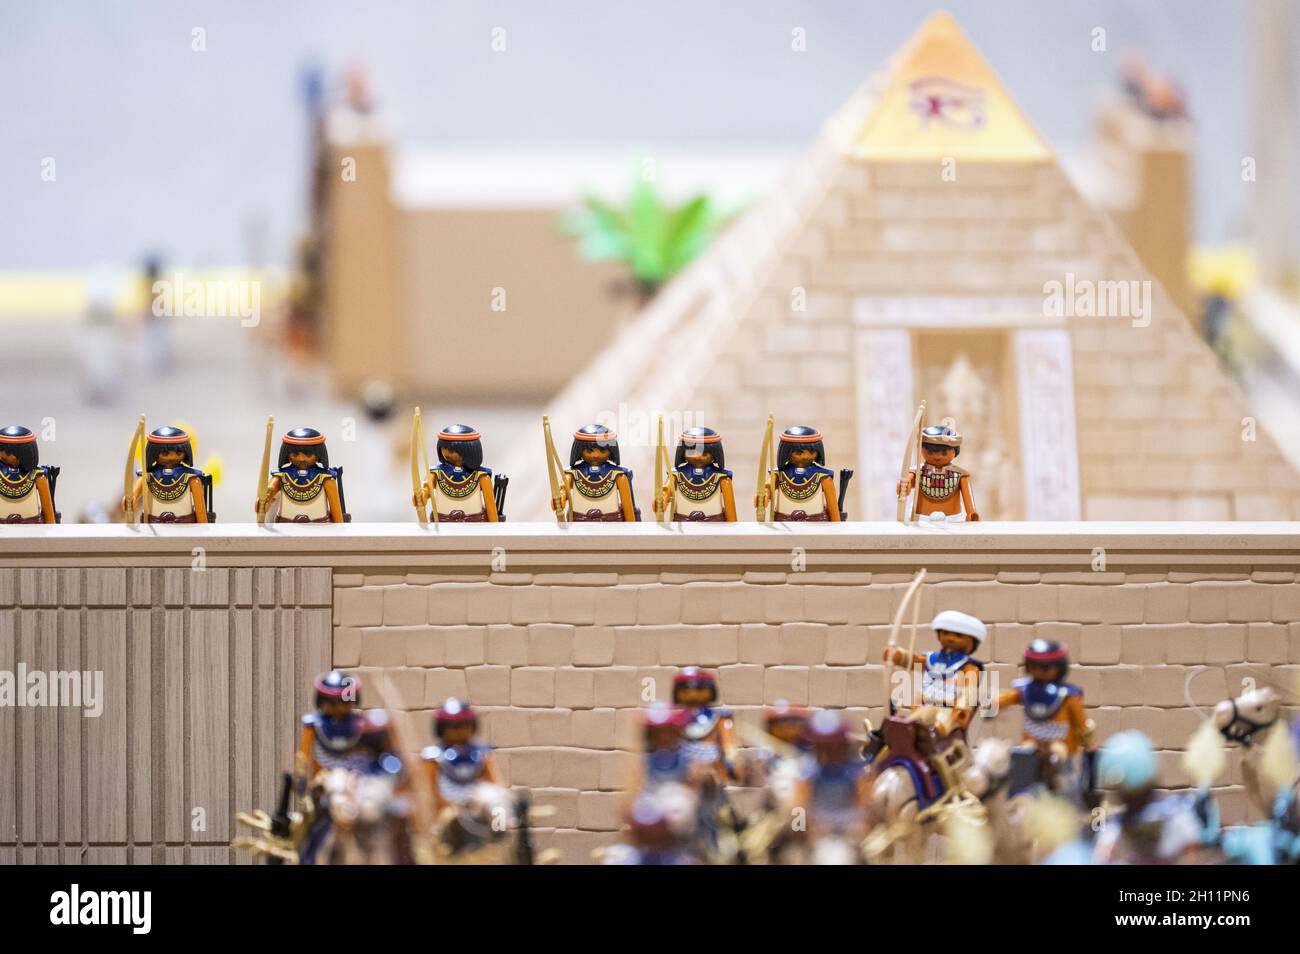 MANRESA, SPANIEN - 24. Sep 2021: Eine Aufnahme einer LEGO-Nachbildung von  Kriegern auf zwei Seiten einer Mauer in der Nähe von Pyramiden in Manresa,  Spanien Stockfotografie - Alamy